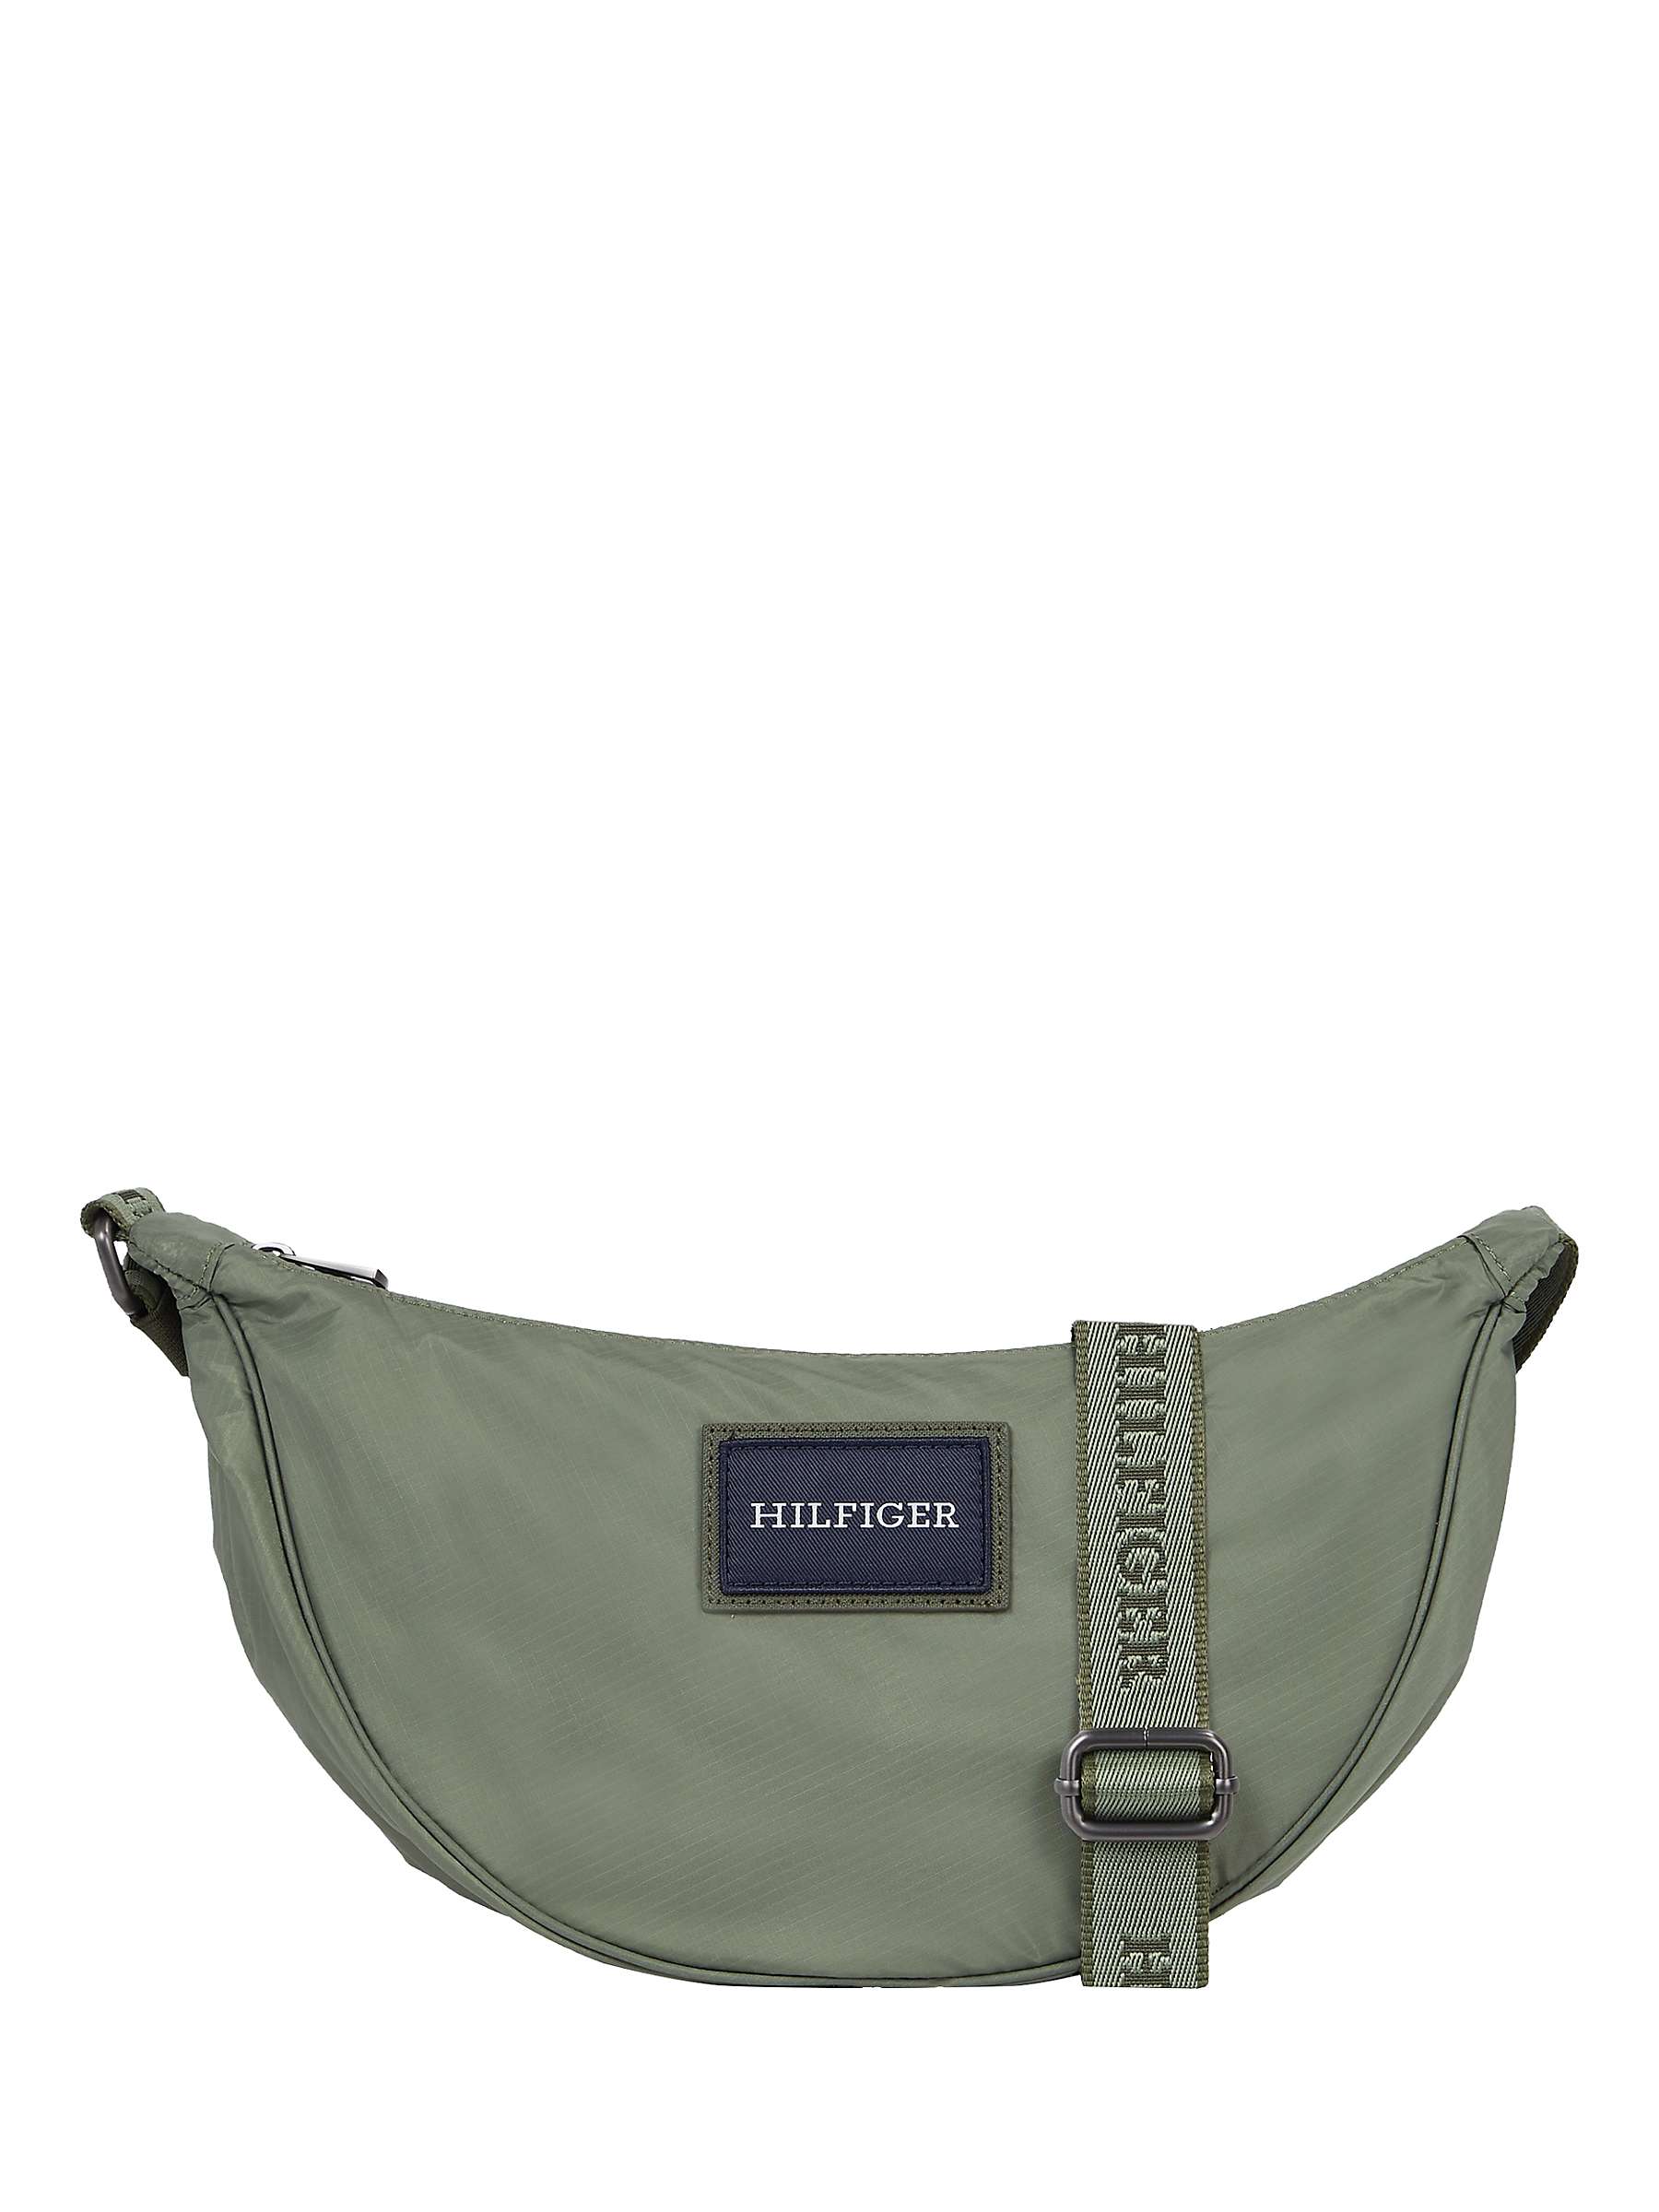 Buy Tommy Hilfiger Crescent Crossover Bag, Green Acres Online at johnlewis.com